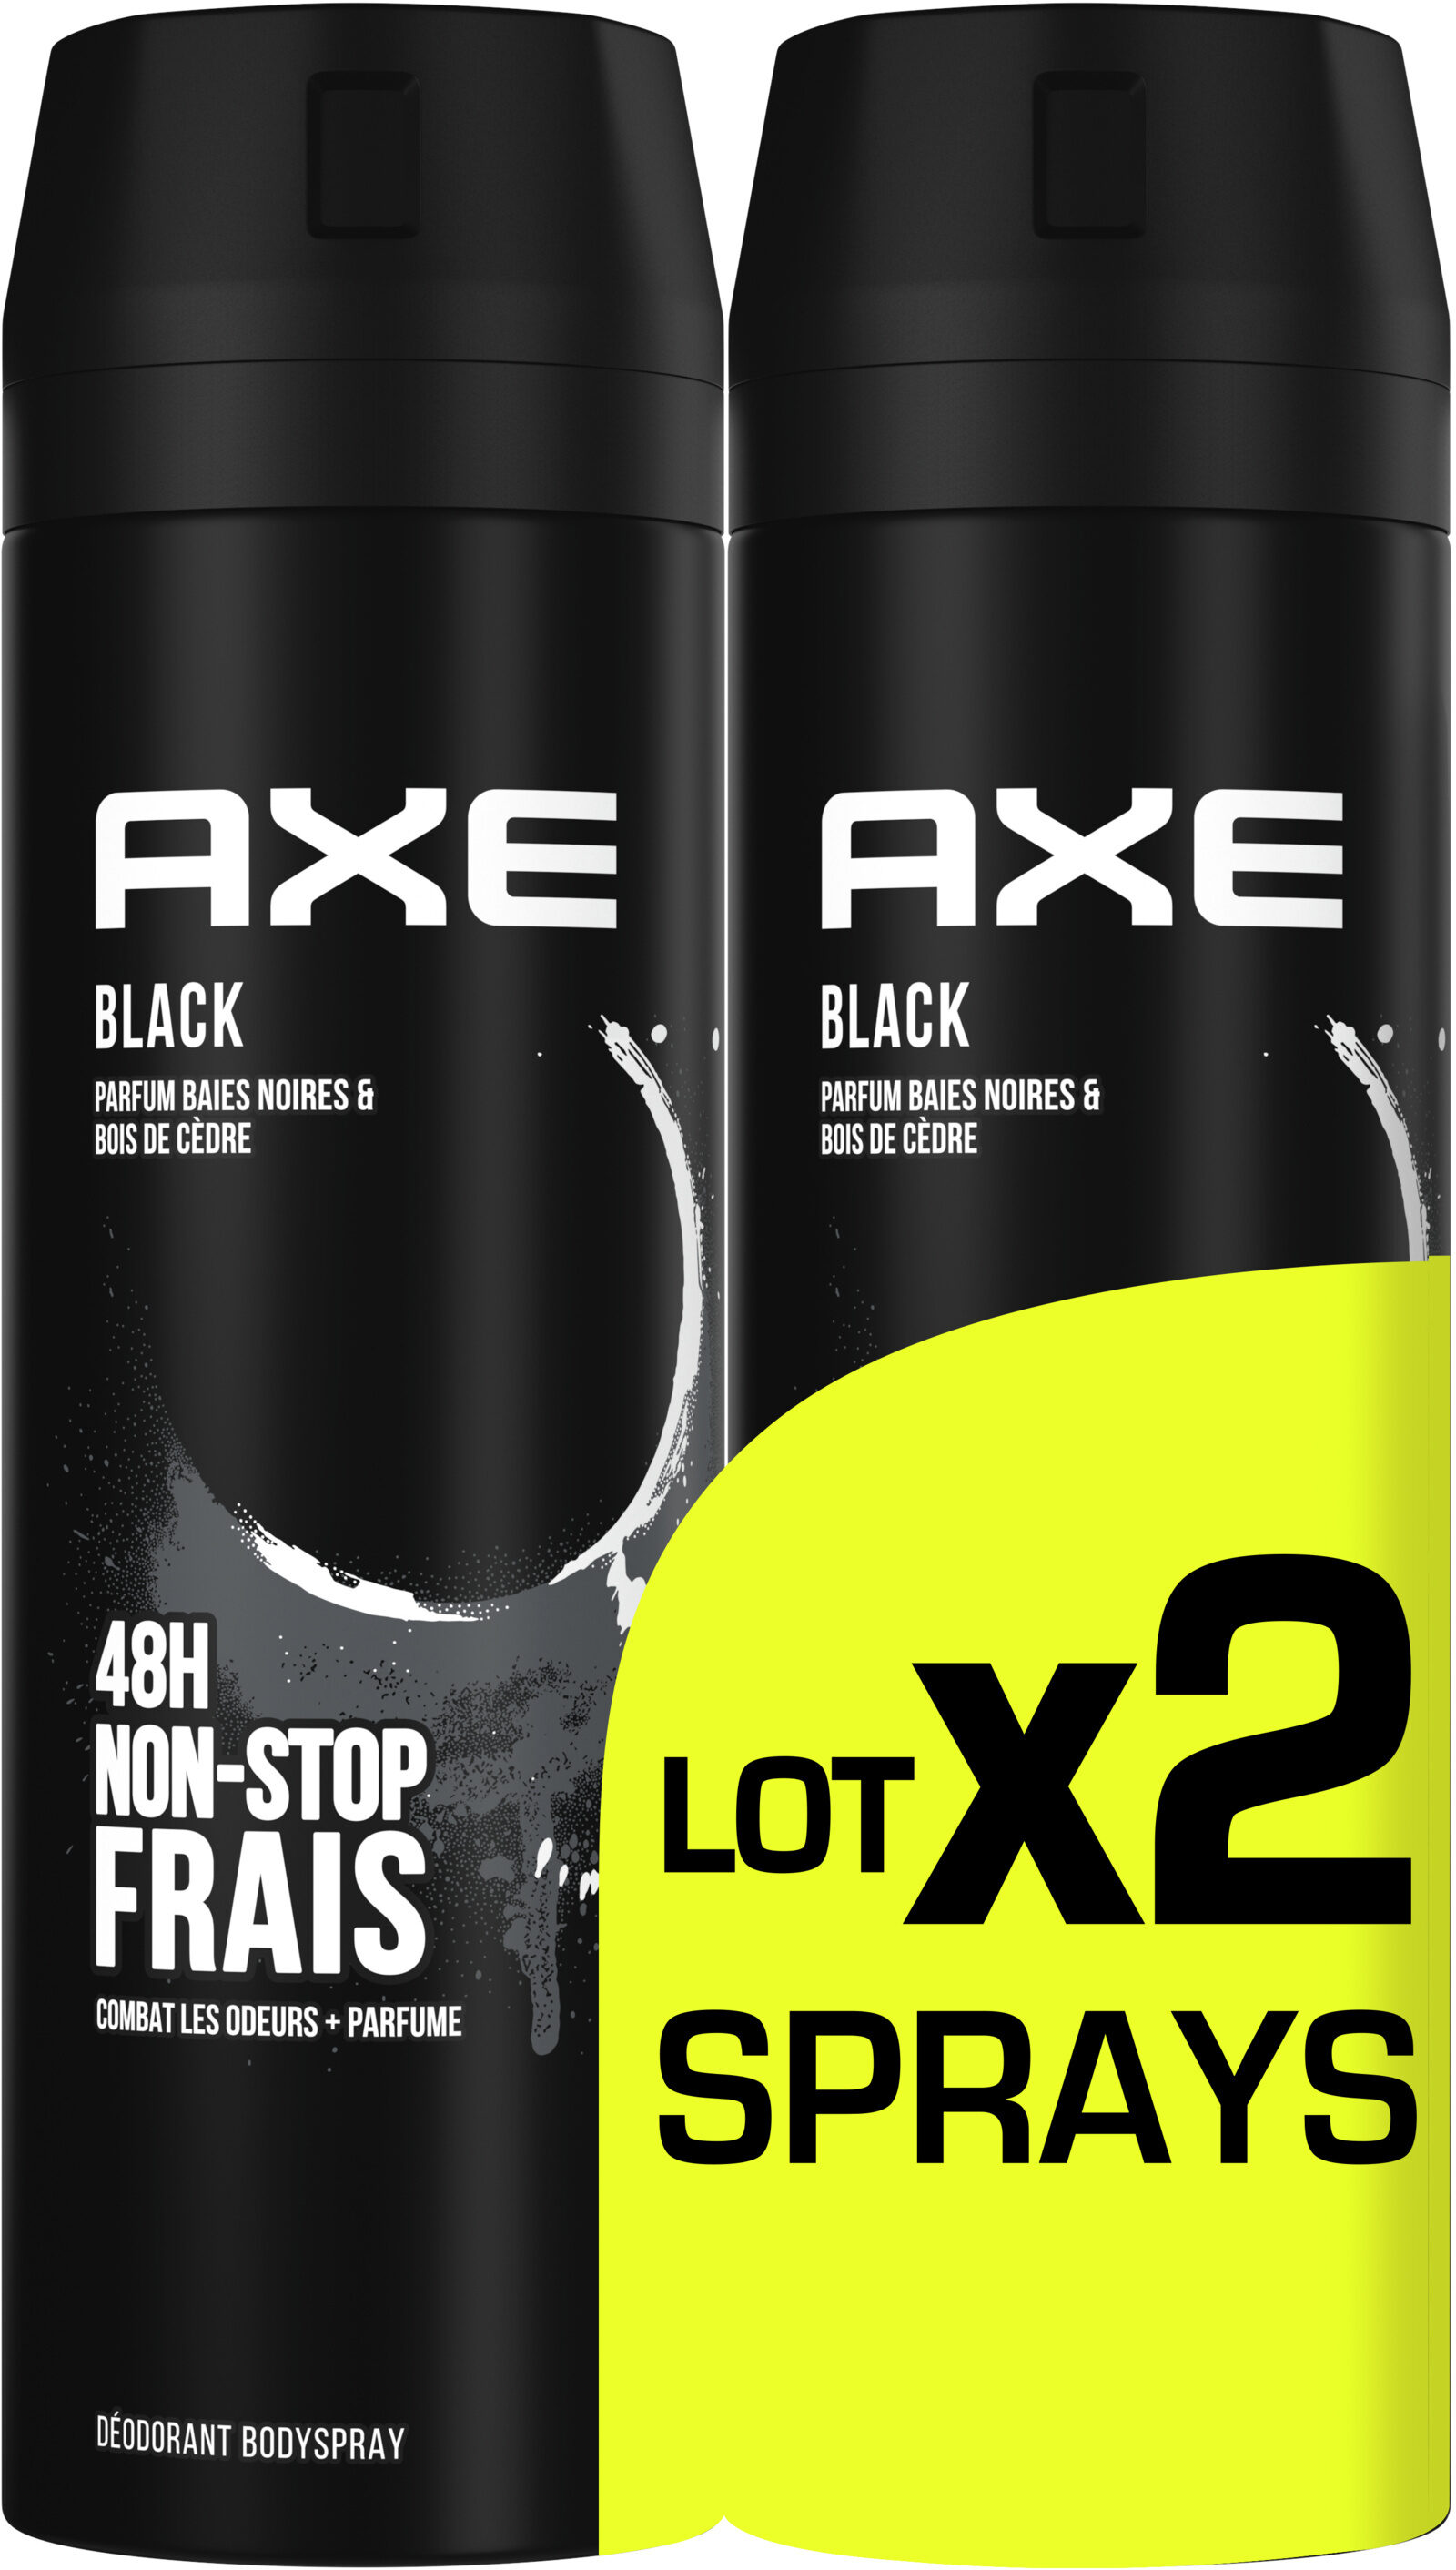 AXE Déodorant Bodyspray Homme Black 48h Non-Stop Frais Lot2x200ml - Tuote - fr